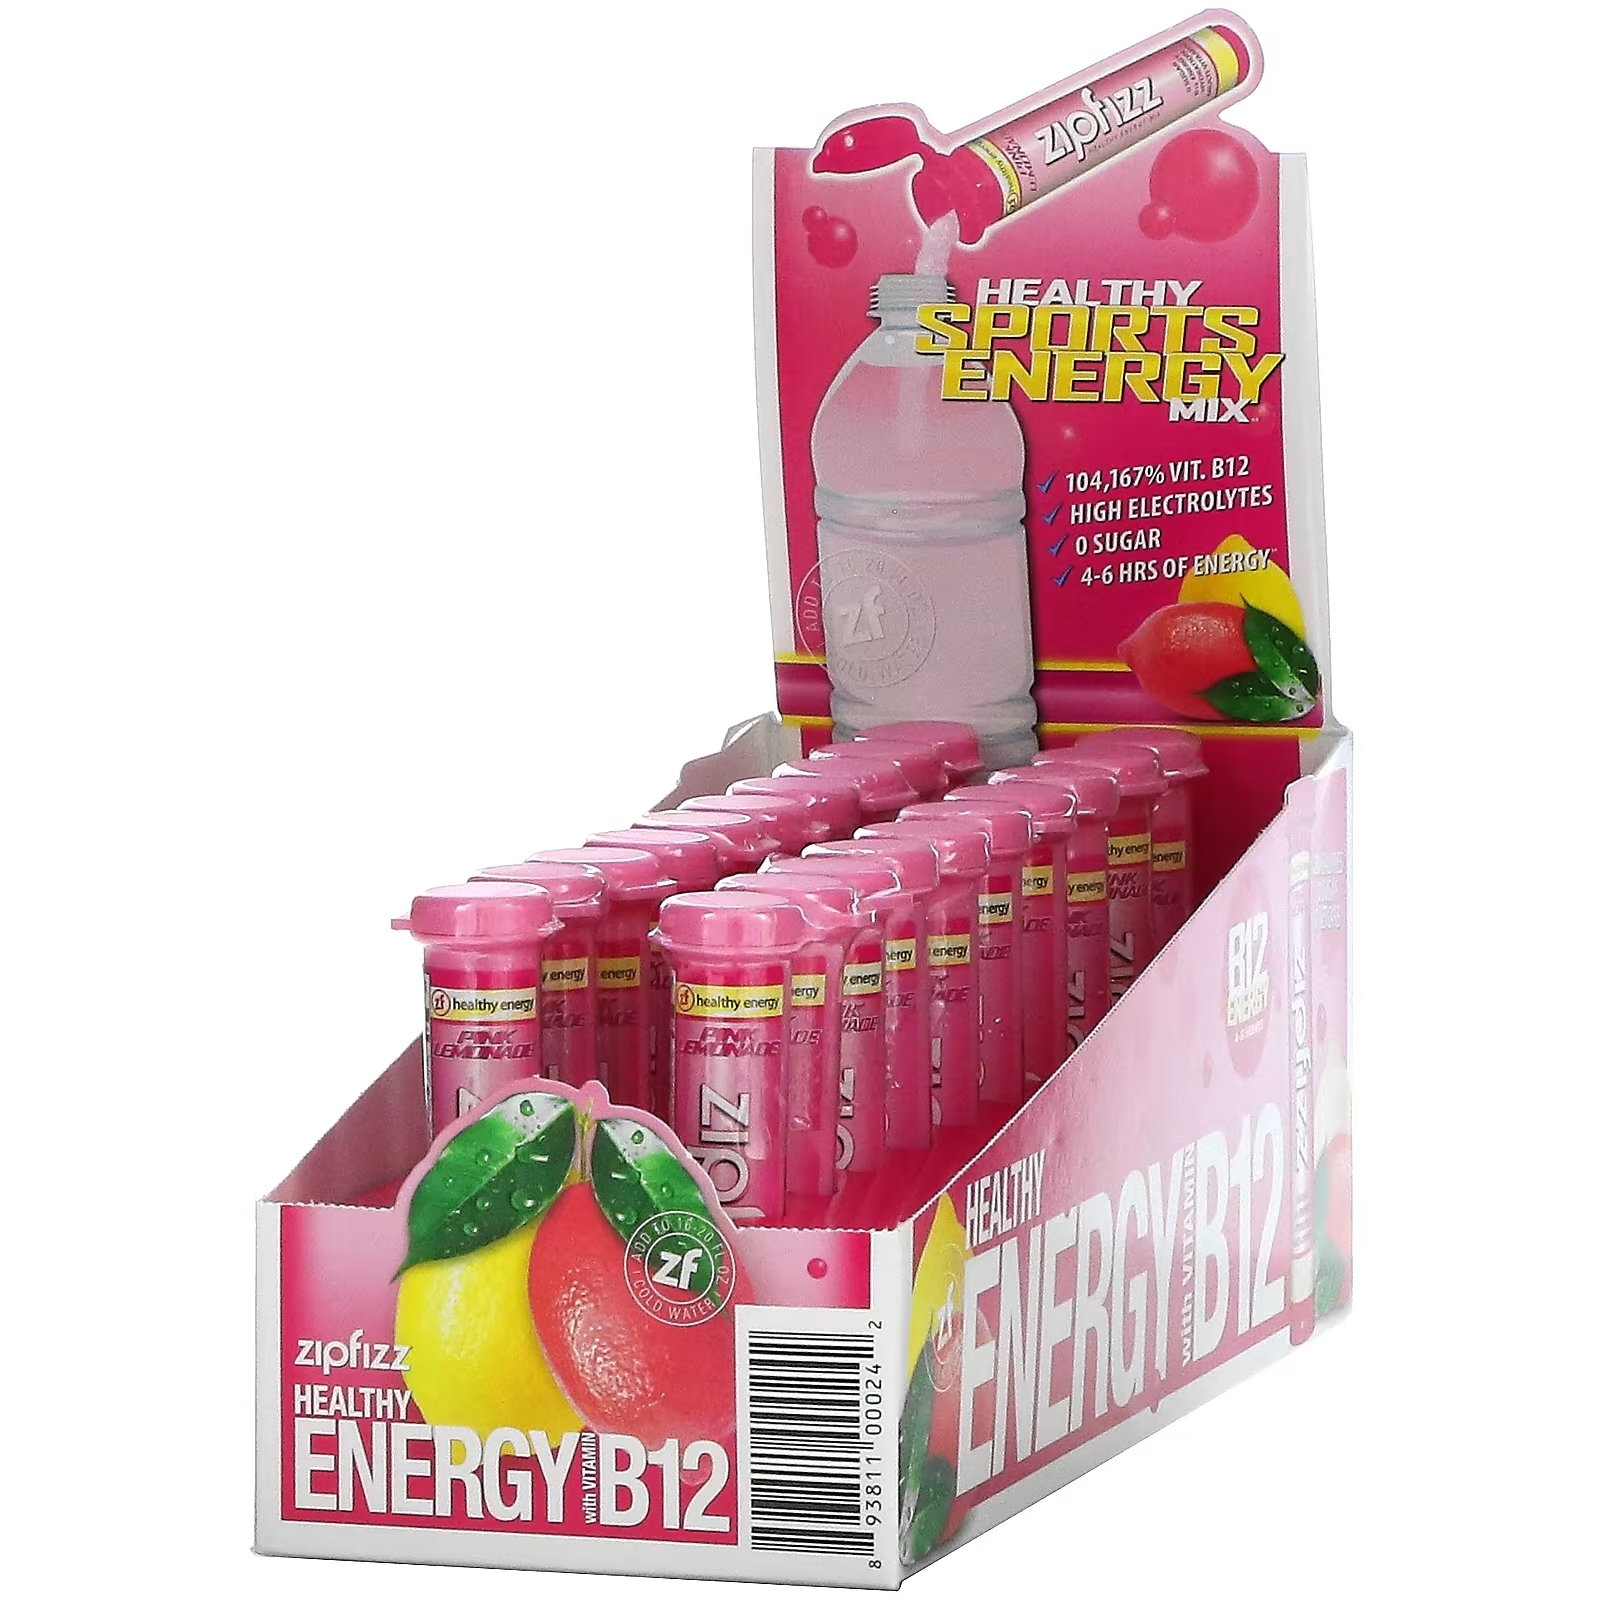 Zipfizz Энергетическая смесь для здорового спорта с витамином B12 розовый лимонад, 20 тюбиков zipfizz чай со льдом смесь для здоровой энергии с витамином b12 лимоном 20 тюбиков по 11 г 0 39 унции